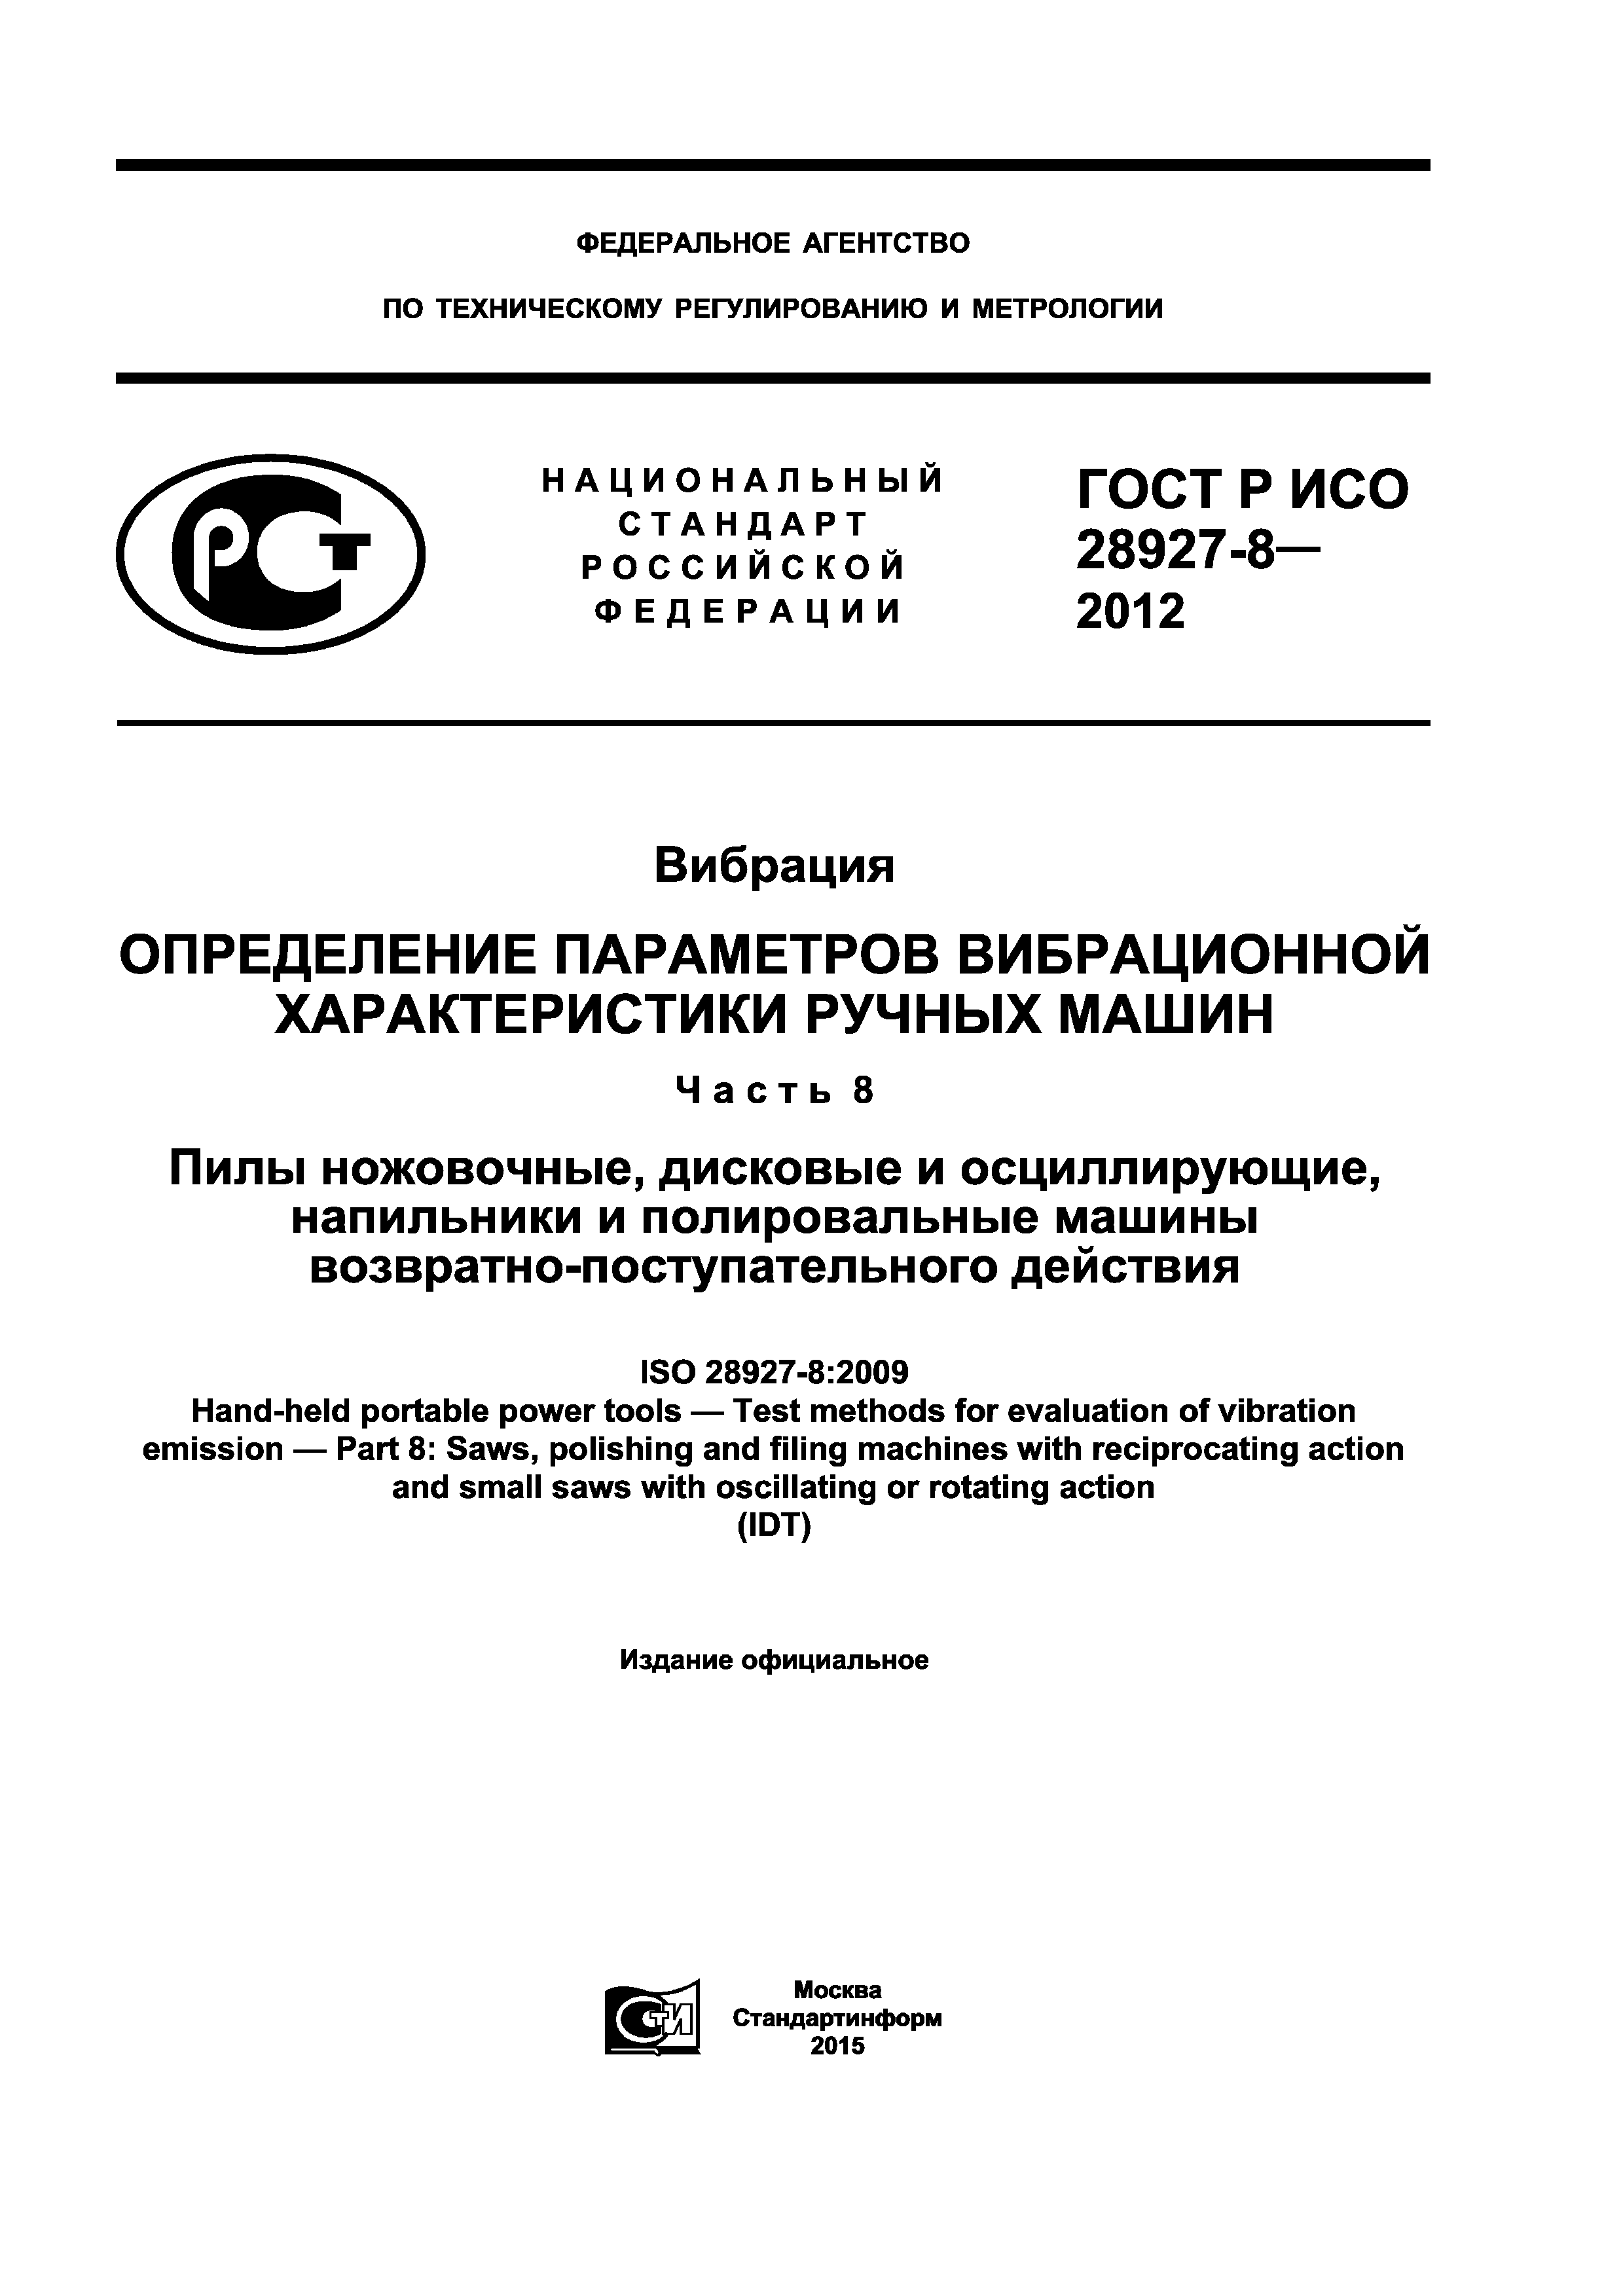 ГОСТ Р ИСО 28927-8-2012